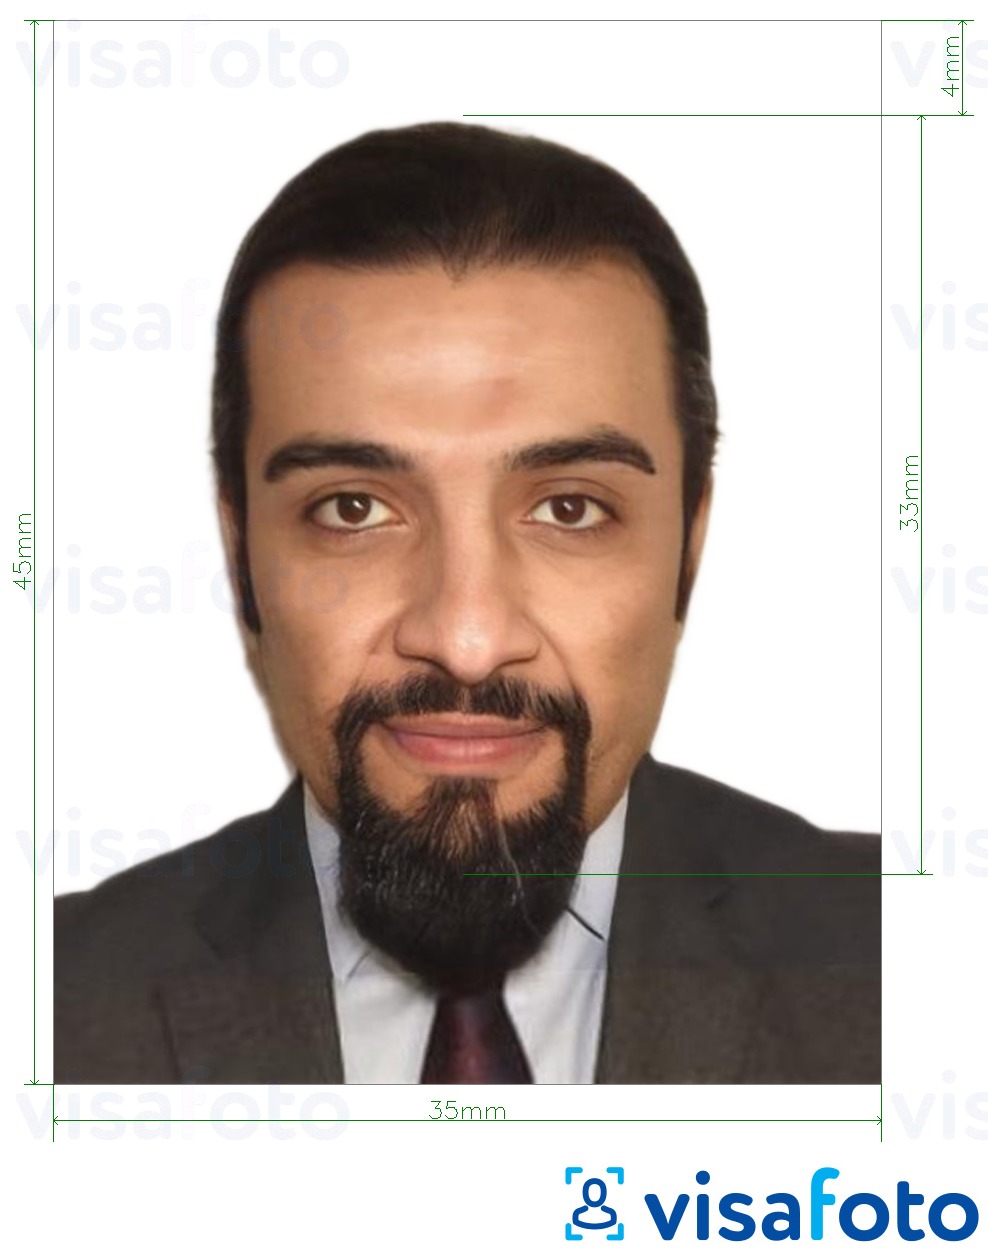 Voorbeeld van foto voor Jordaan paspoort 3,5x4,5 cm (35x45 mm) met exacte maatspecificatie